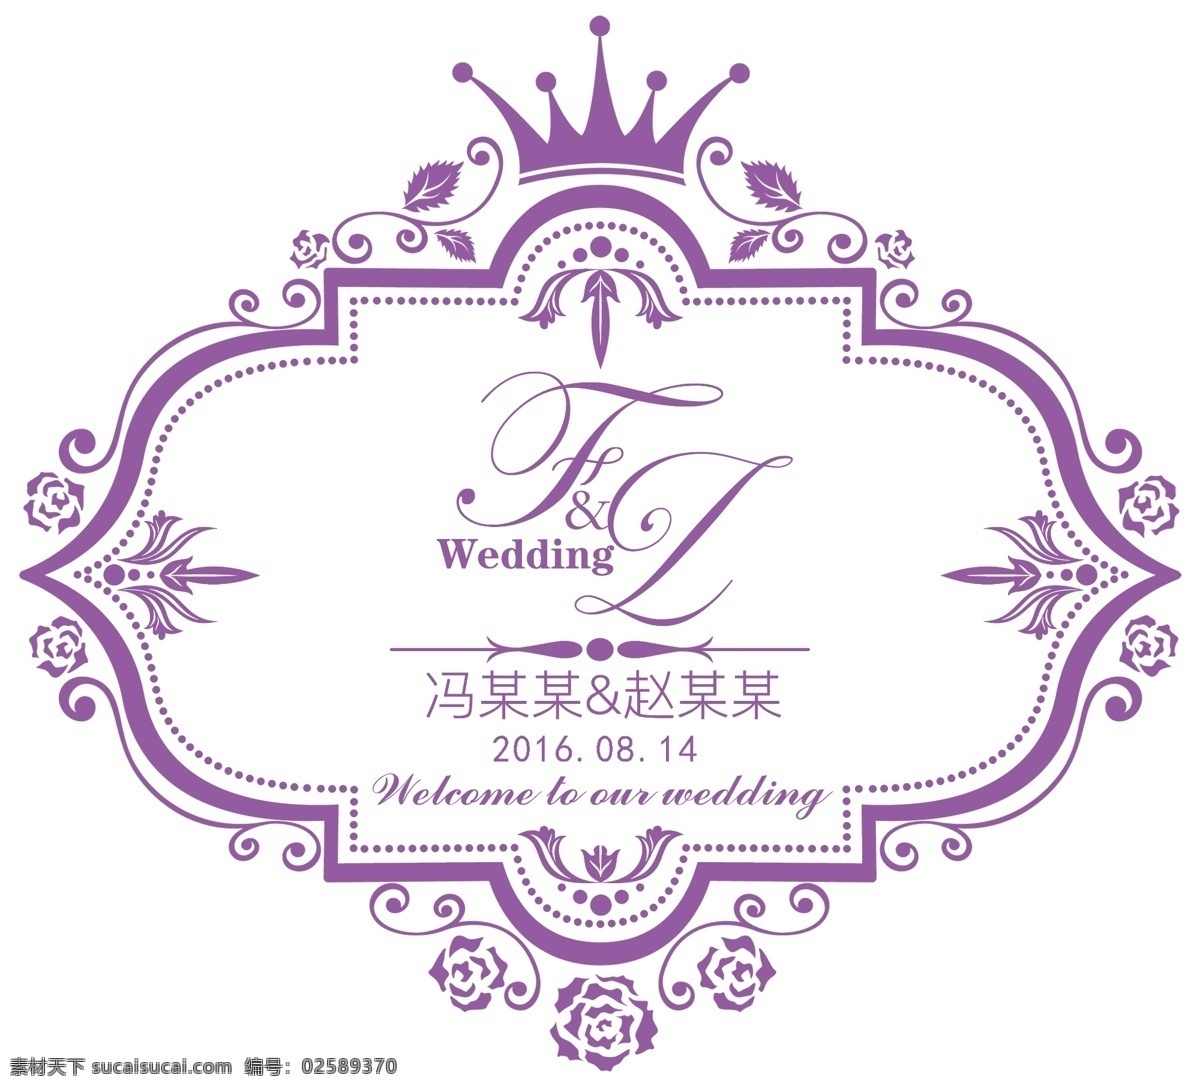 紫色 婚礼 主题 牌 fz logo 紫色婚礼 主题牌 主题花纹 字体设计 婚礼logo 分层